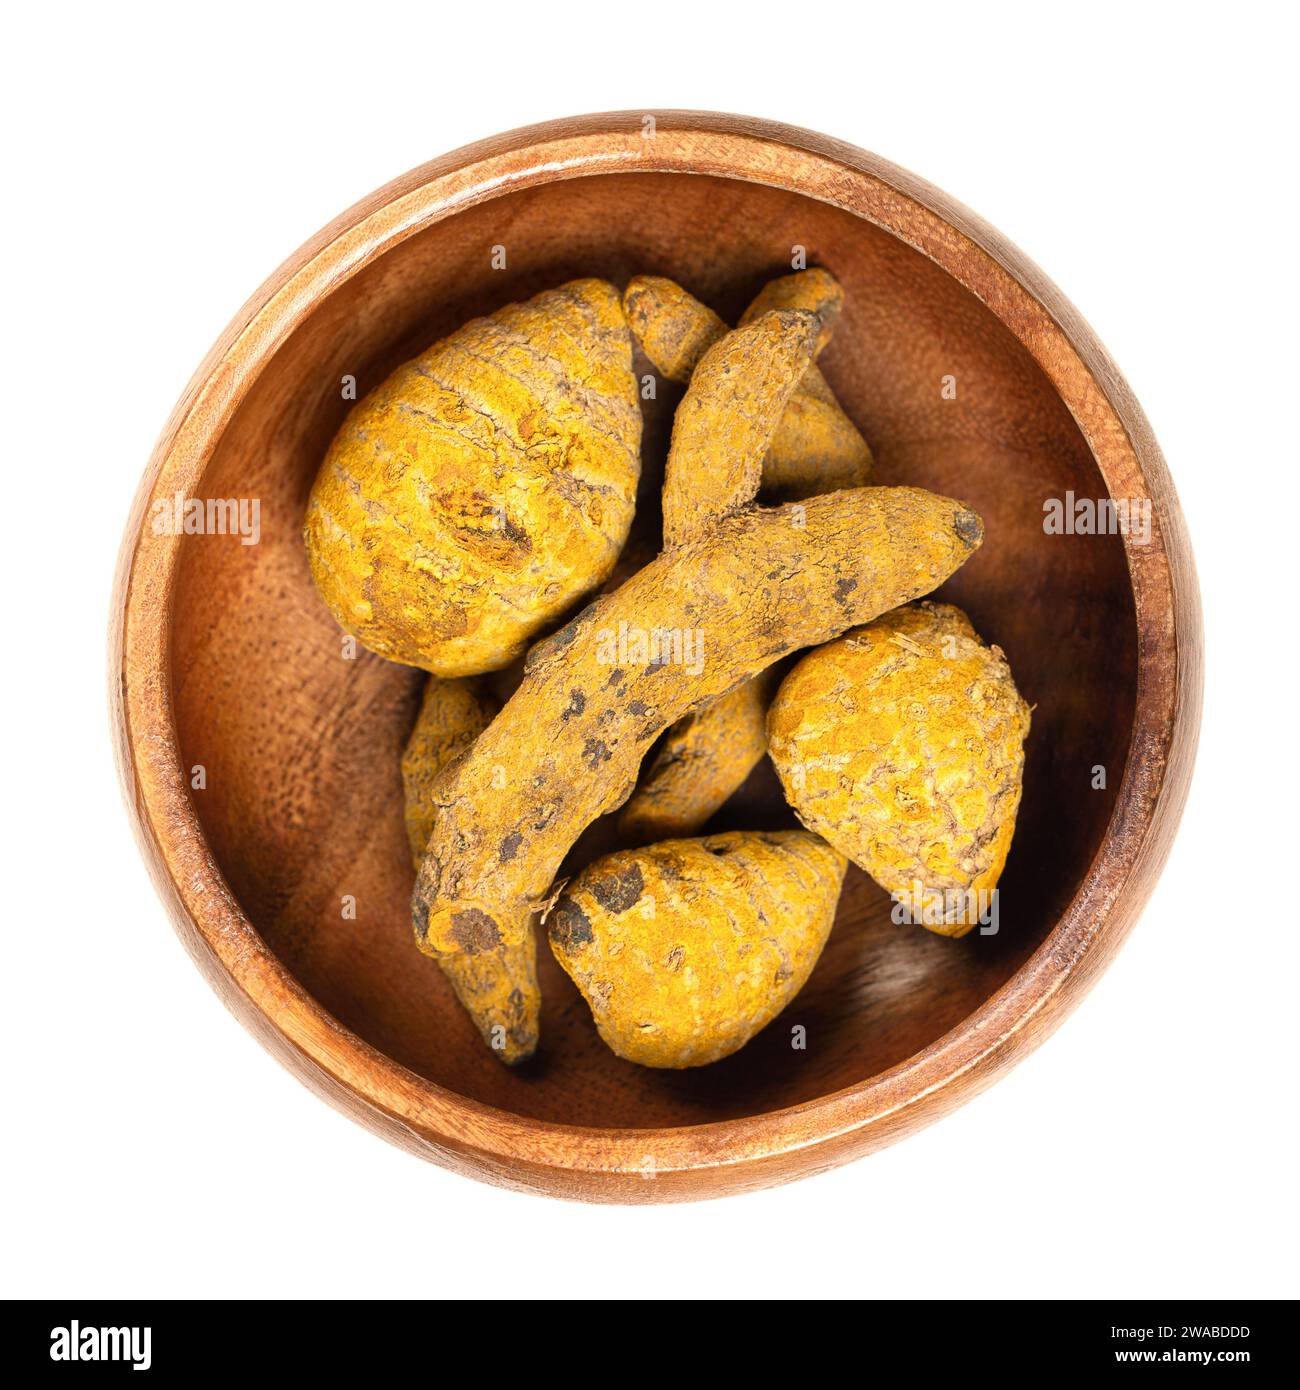 Racine de curcuma entière séchée dans un bol en bois. Rhizomes déshydratés de Curcuma longa, aussi appelés tumériques. Utilisé comme épice et comme colorant. Banque D'Images